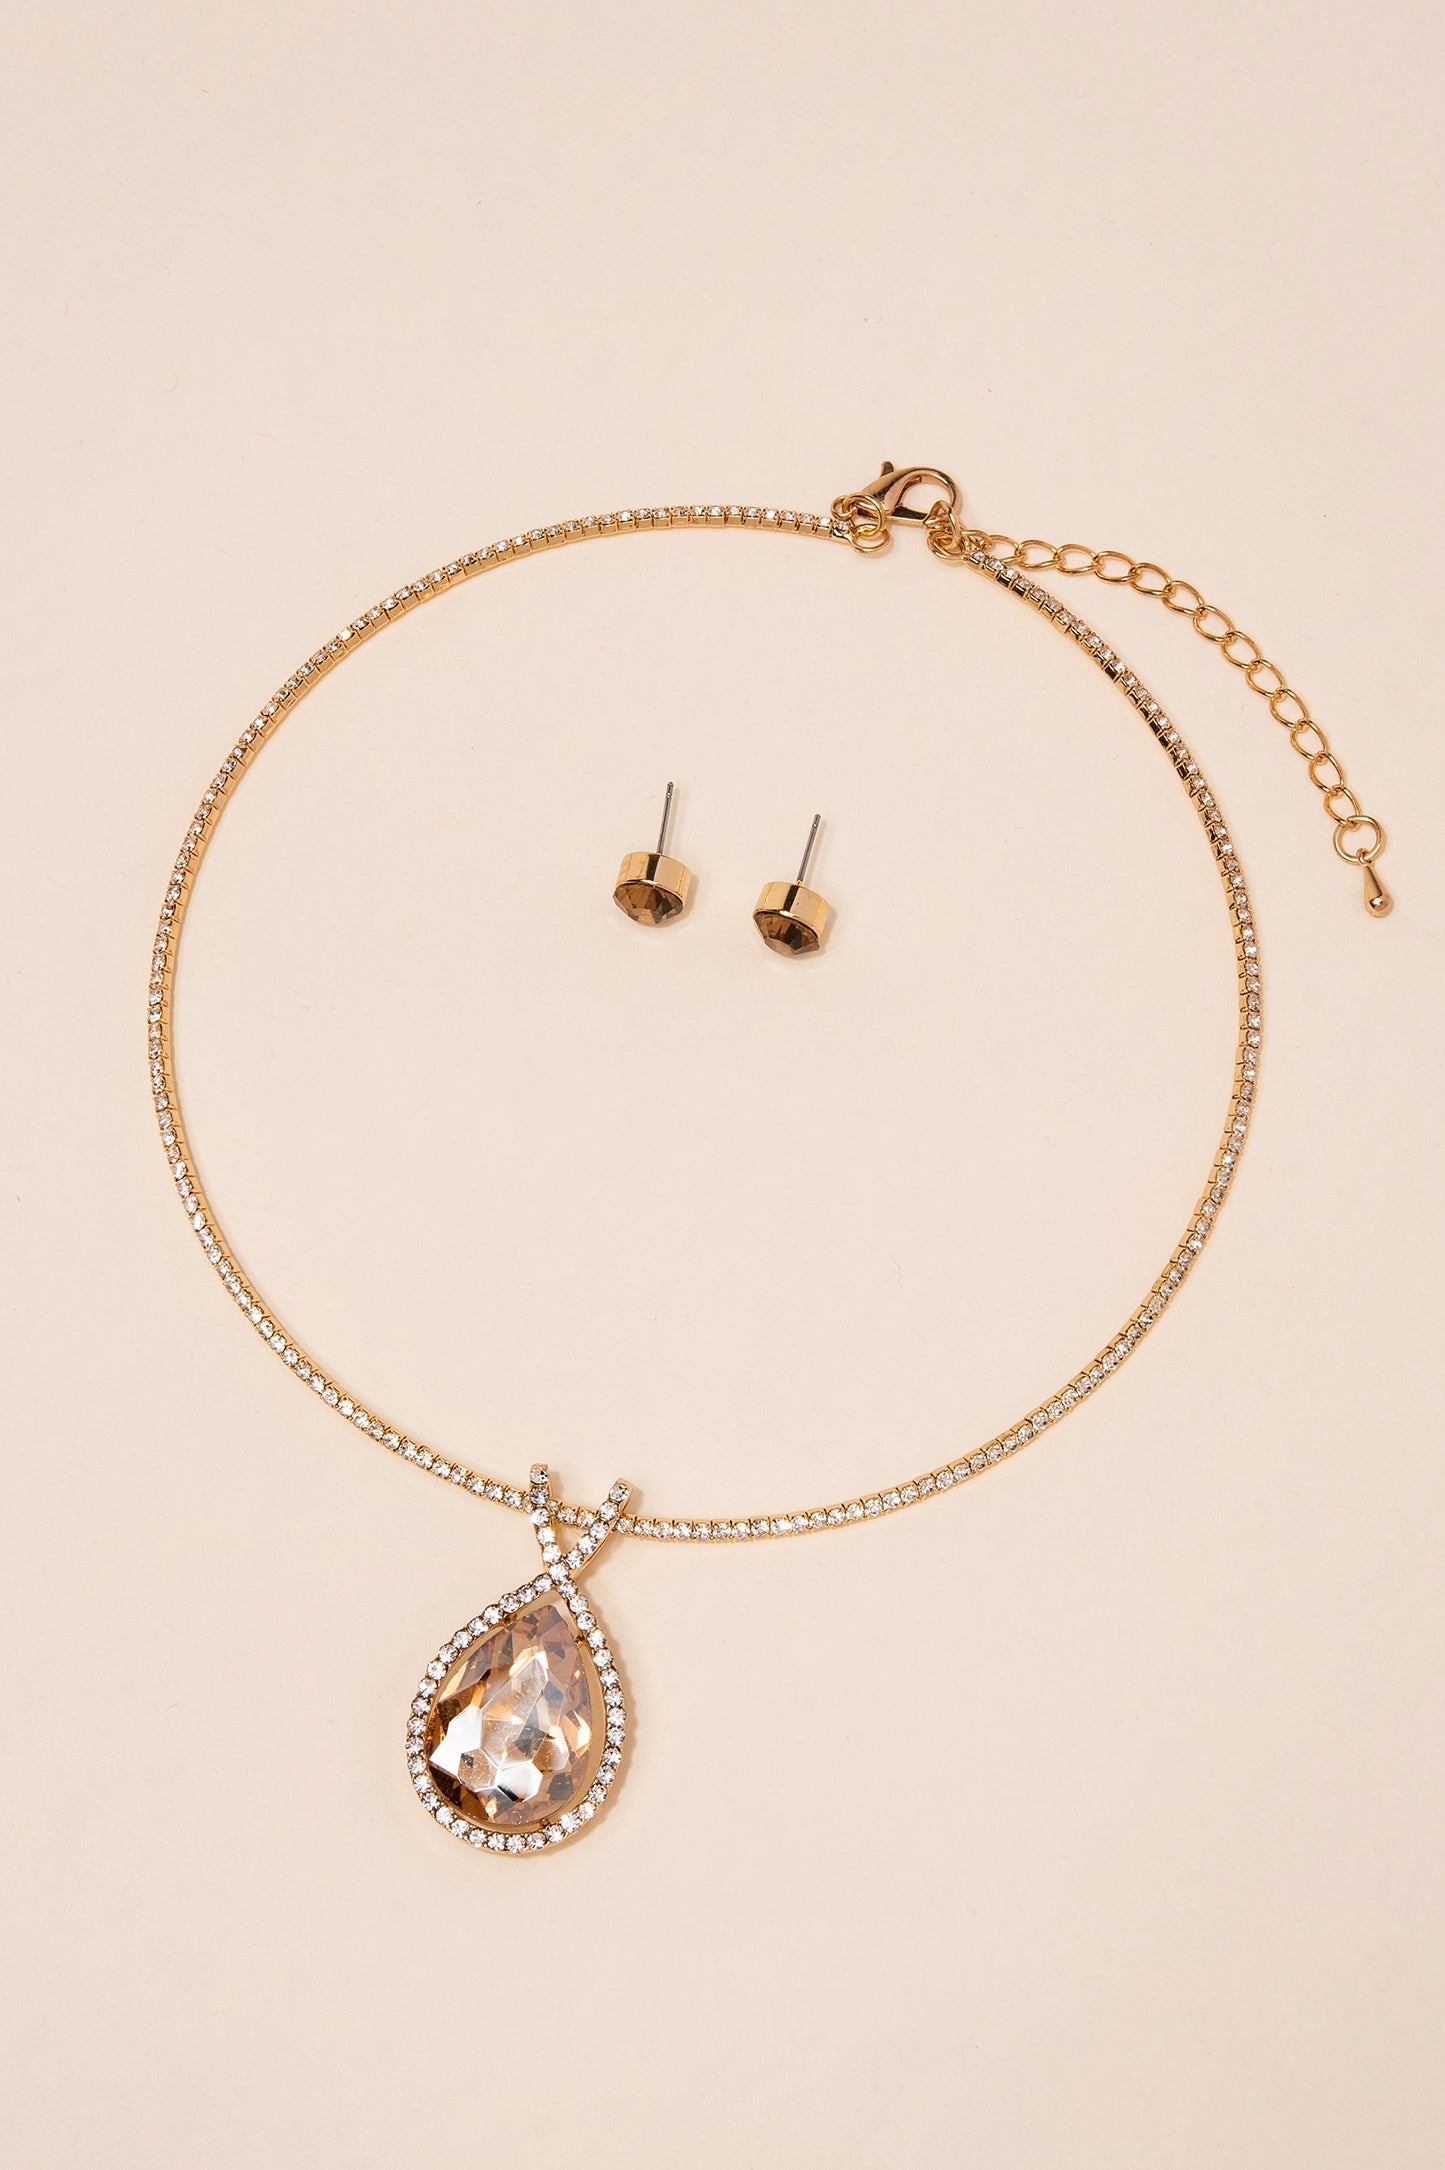 Tear Drop Stone Pendant Tennis Chain Necklace Set - Gold